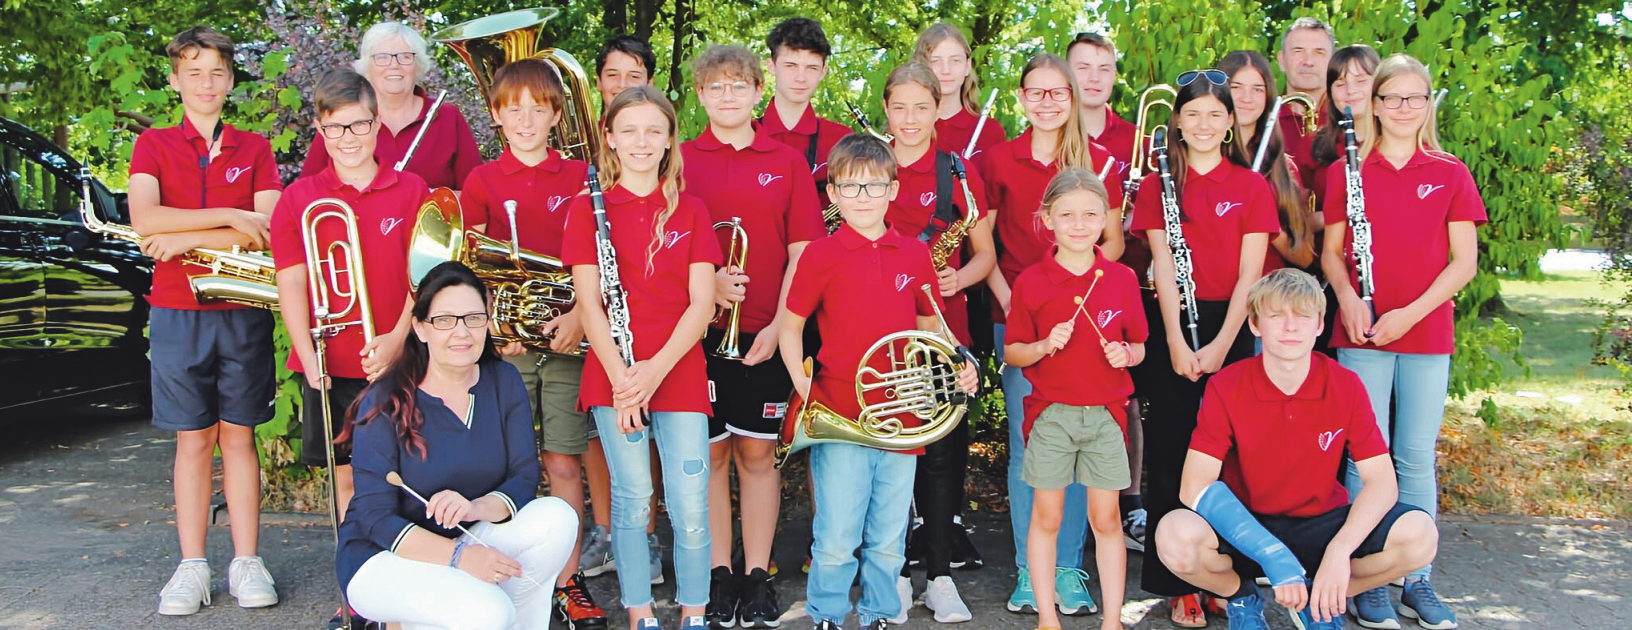 Nach ungefähr einem Jahr Ausbildung am Instrument können die Kinder und Jugendlichen im Schülerensemble „Vikids" mitspielen.